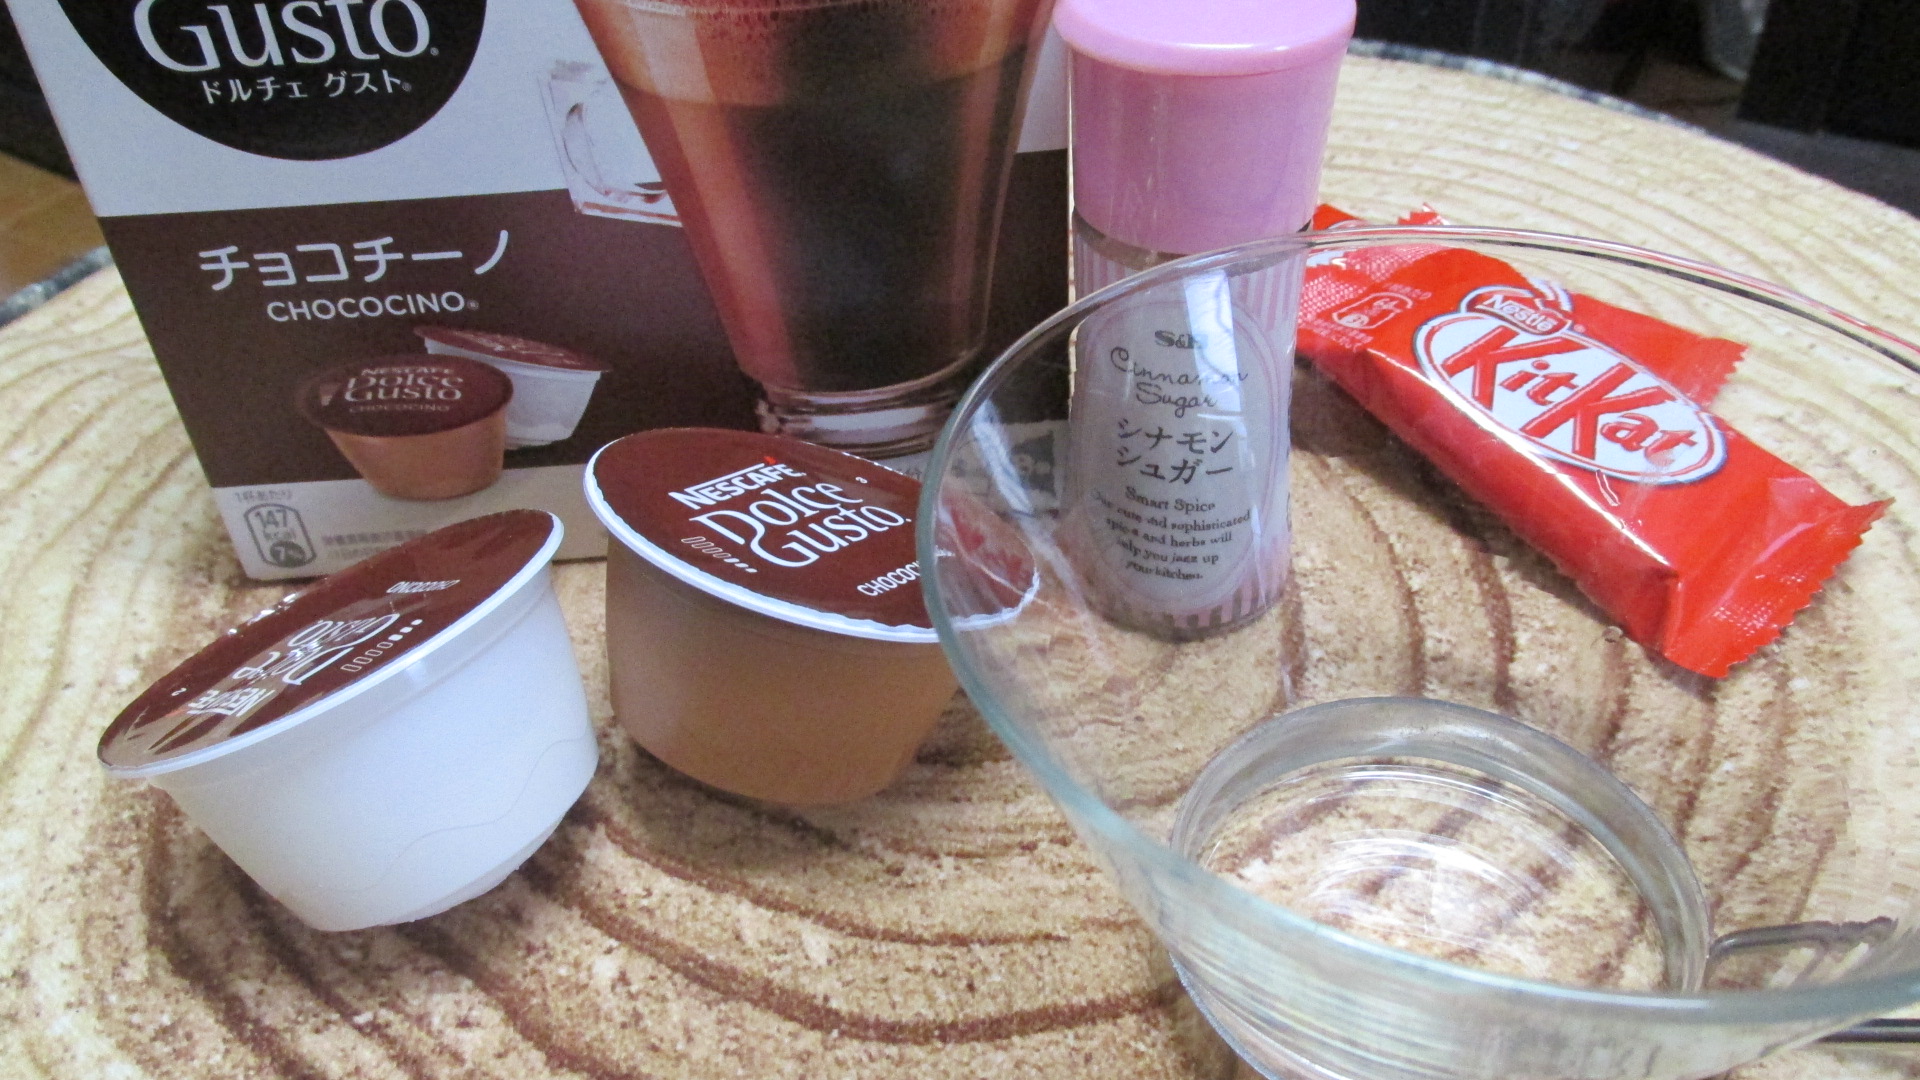 ネスカフェドルチェグストのアレンジレシピ｢メルティーチョコチーノ｣ - Coffee Ambassador(コーヒーアンバサダー)